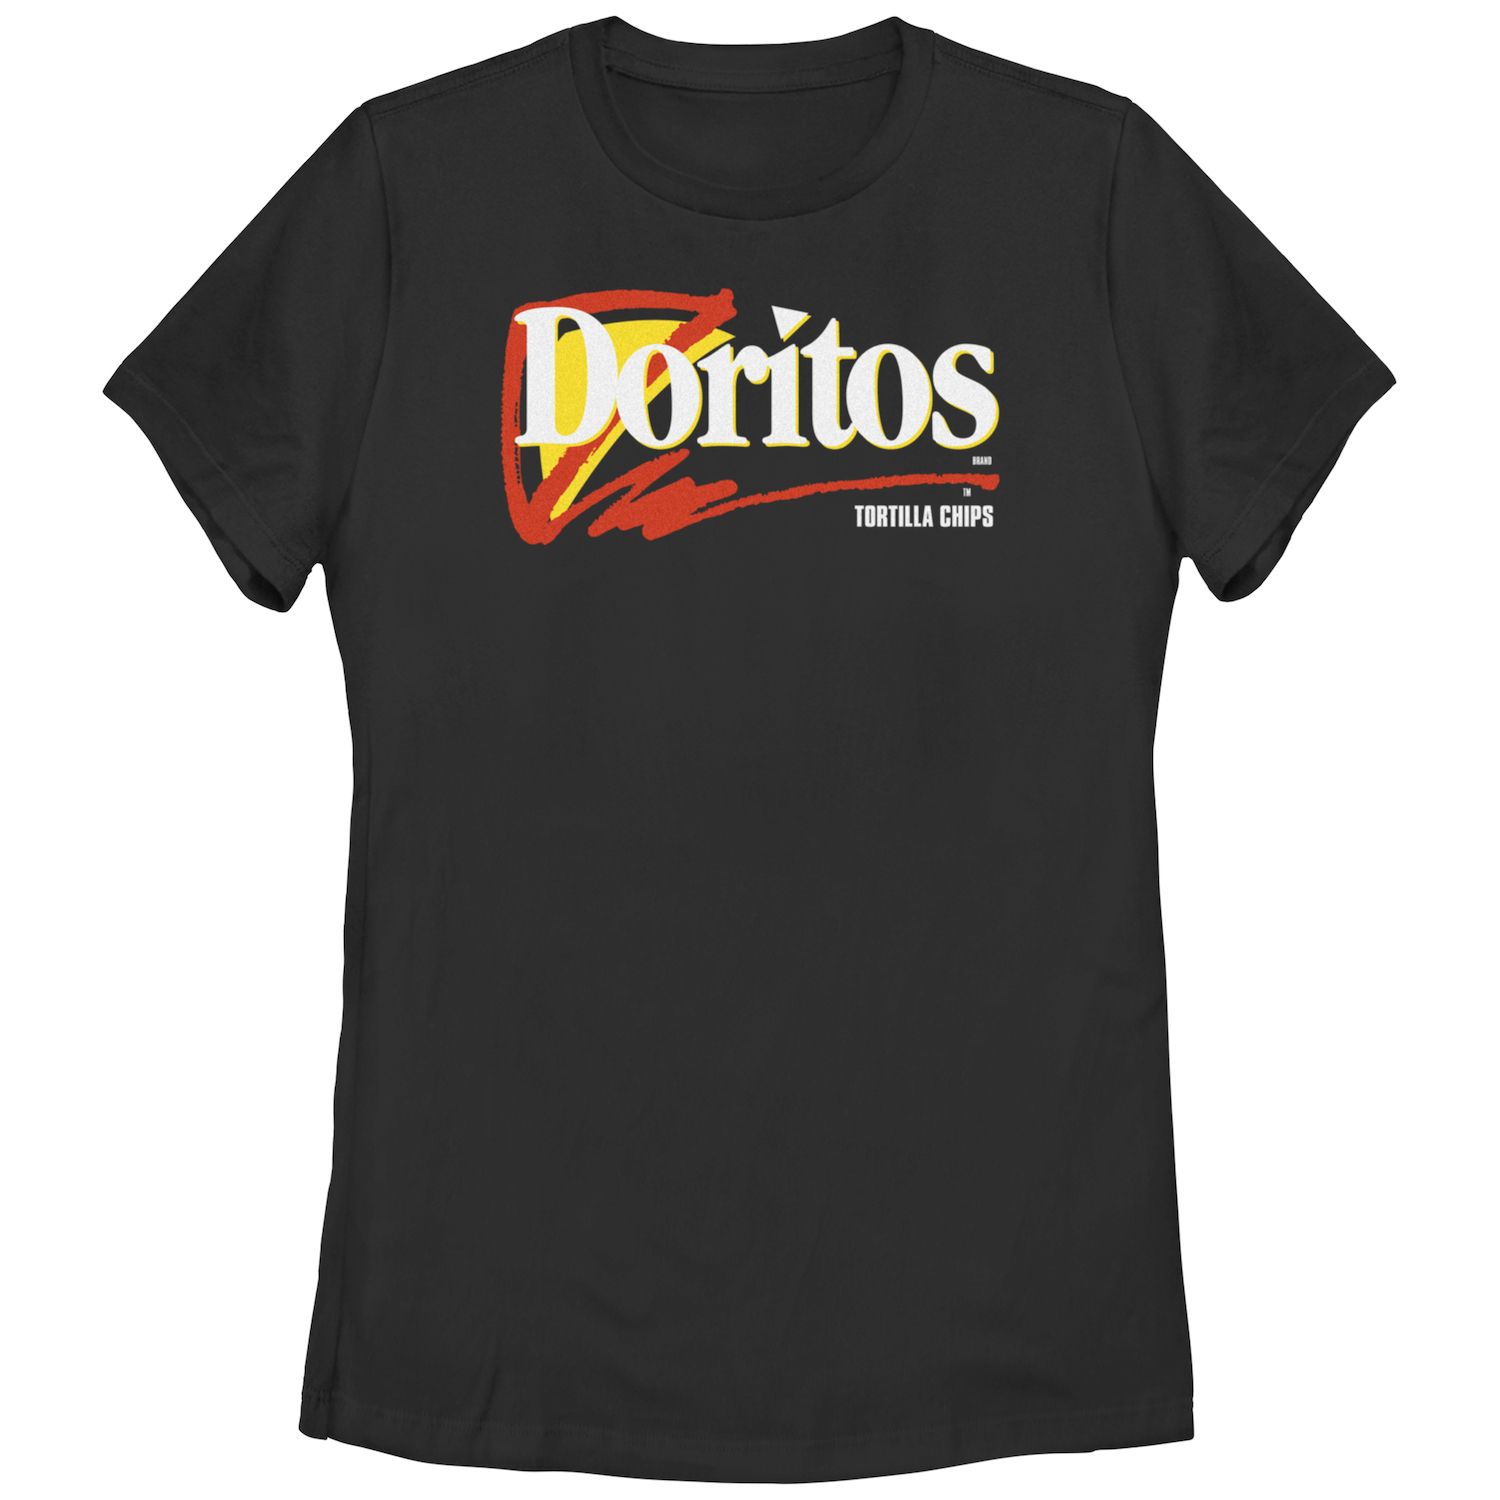 Детская футболка с логотипом Doritos Tortilla Chips и графическим рисунком Doritos doritos кукурузные чипсы doritos паприка 100г